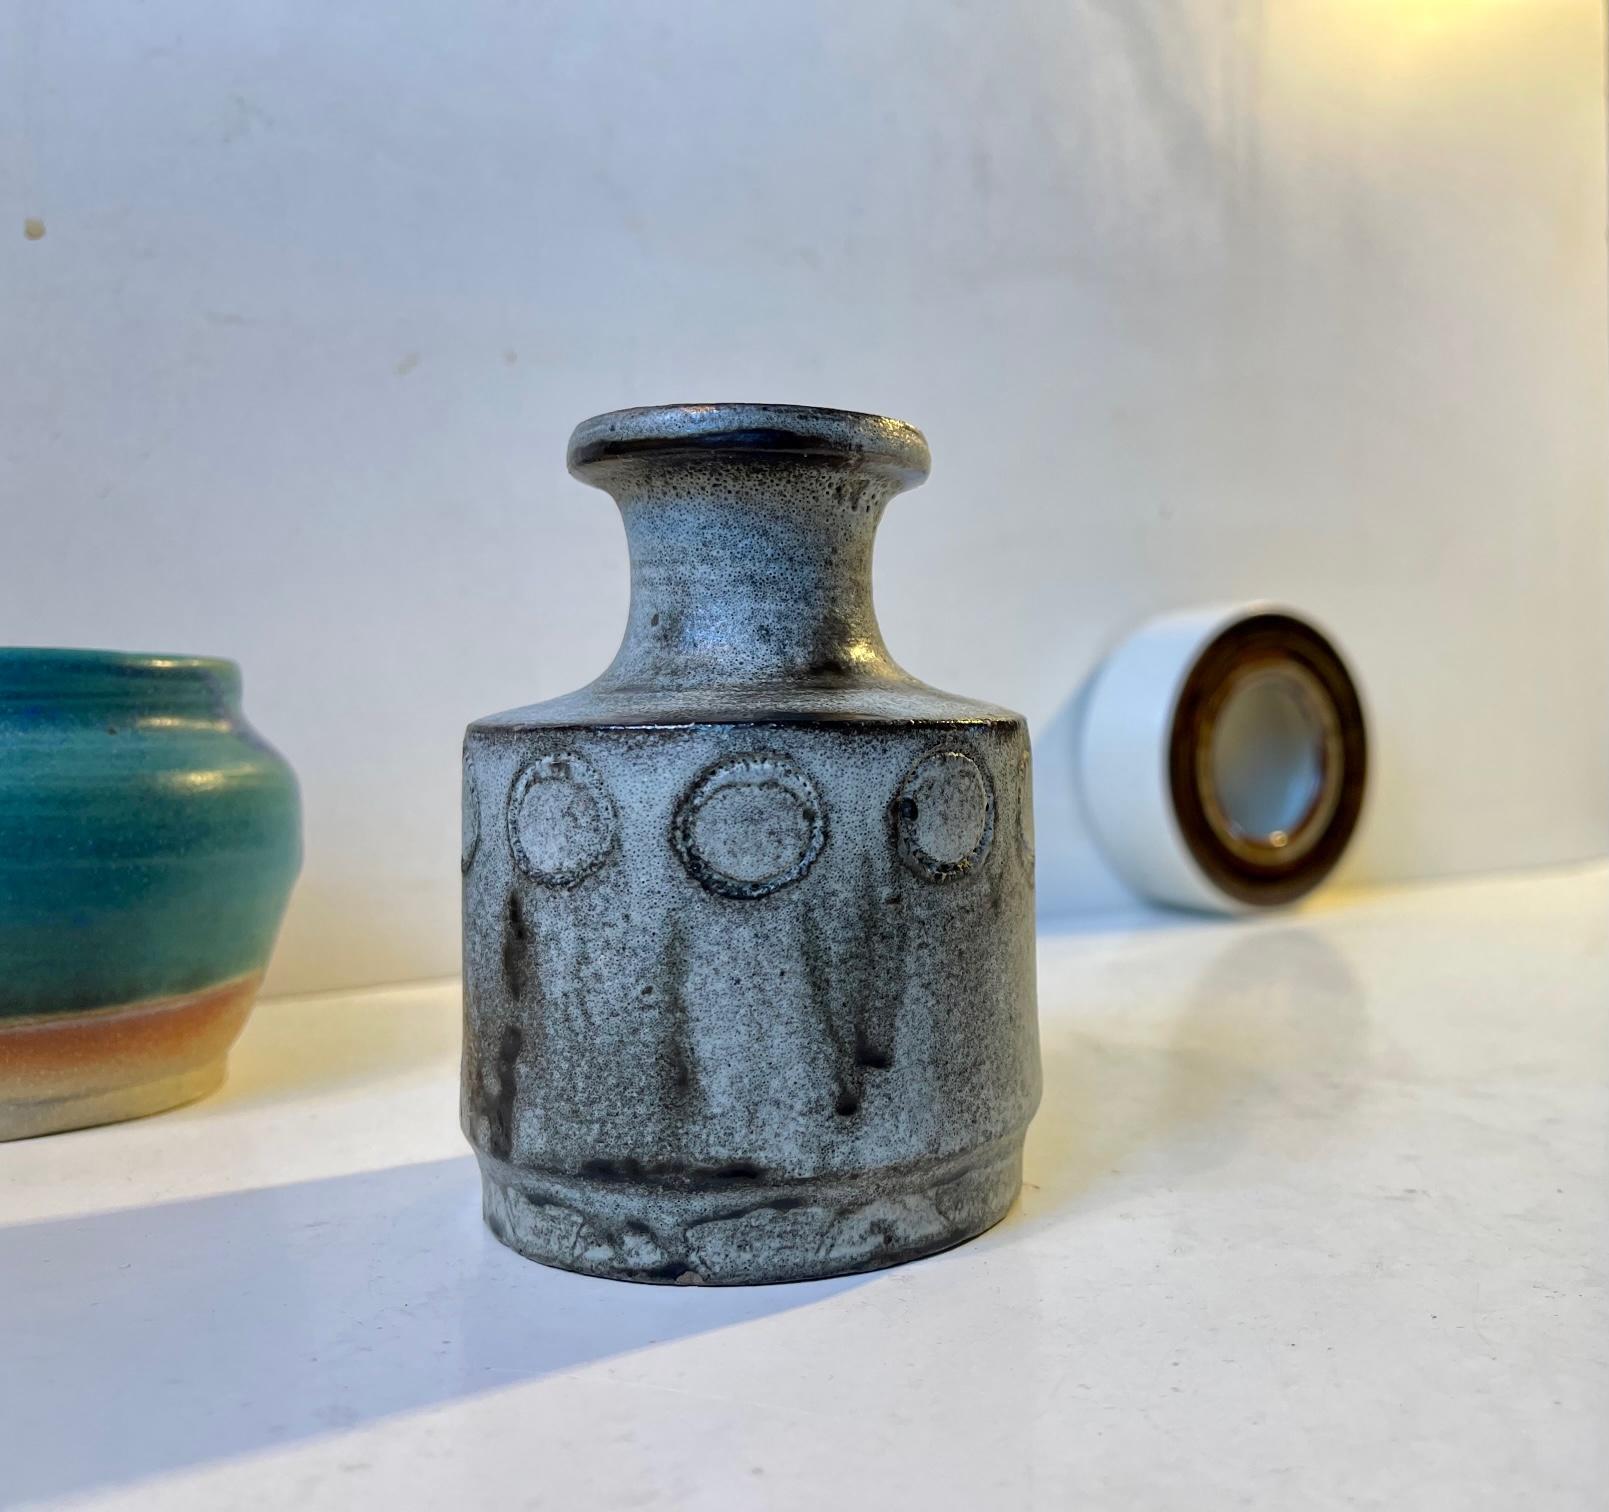 Gruppe von 3 skandinavischen Keramik-/Steinzeugstücken, gemischt/kuriert. Die erste mit einer staubigen blauen/grünen türkisfarbenen Glasur, einer von Hammershoi inspirierten Vase mit Esche-basierter Glasur und einem kleinen zylindrischen